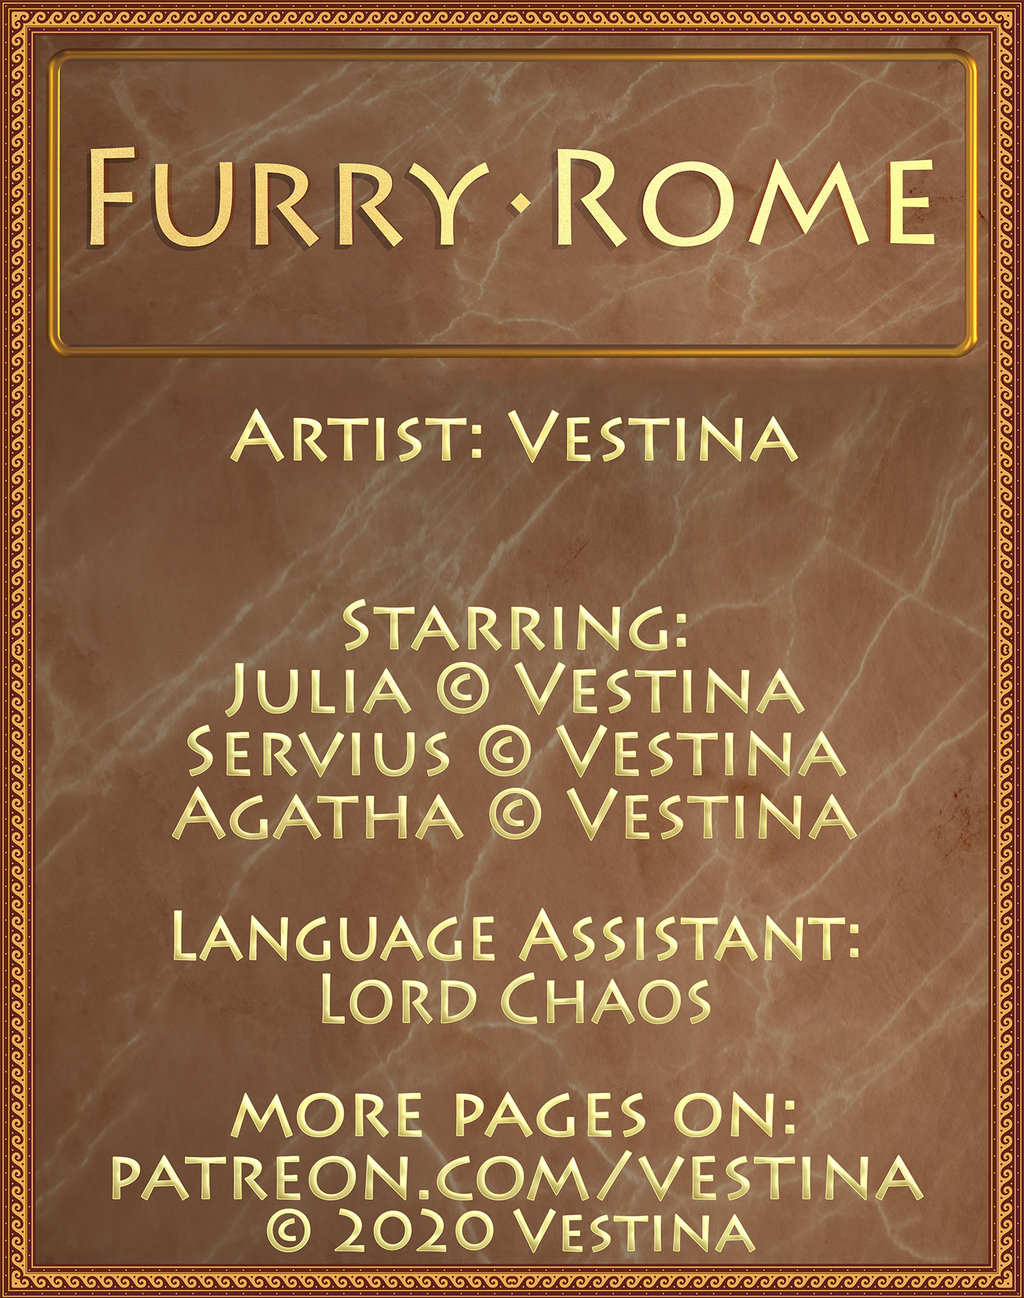 Furry Rome info